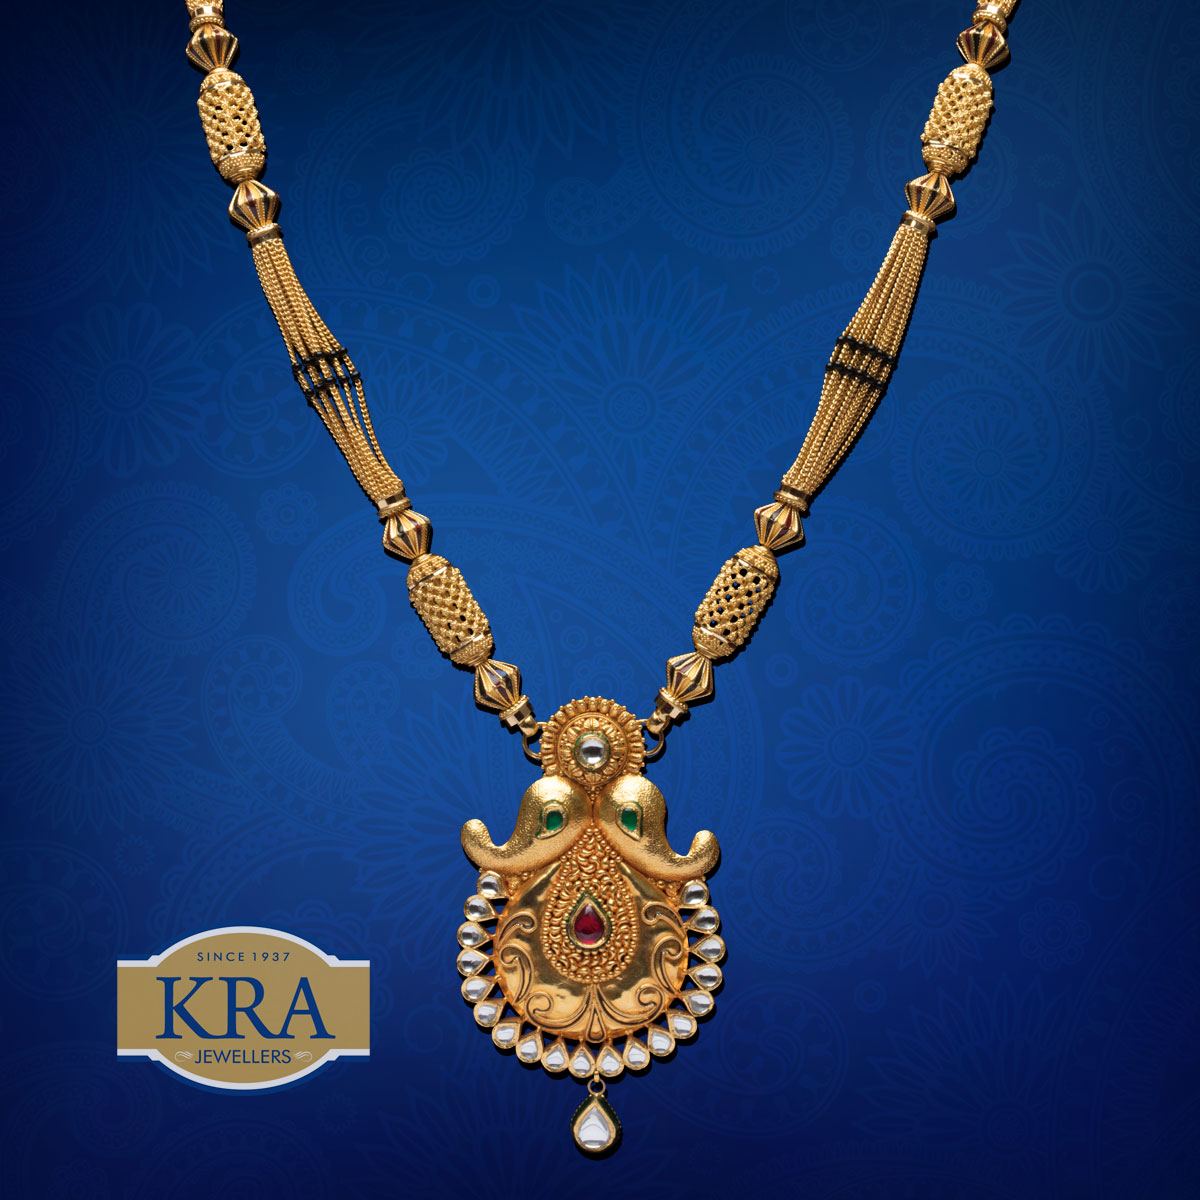 Classic / Traditional, Gold, Krishna Rajaram Ashtekar Jewellers, kra ...